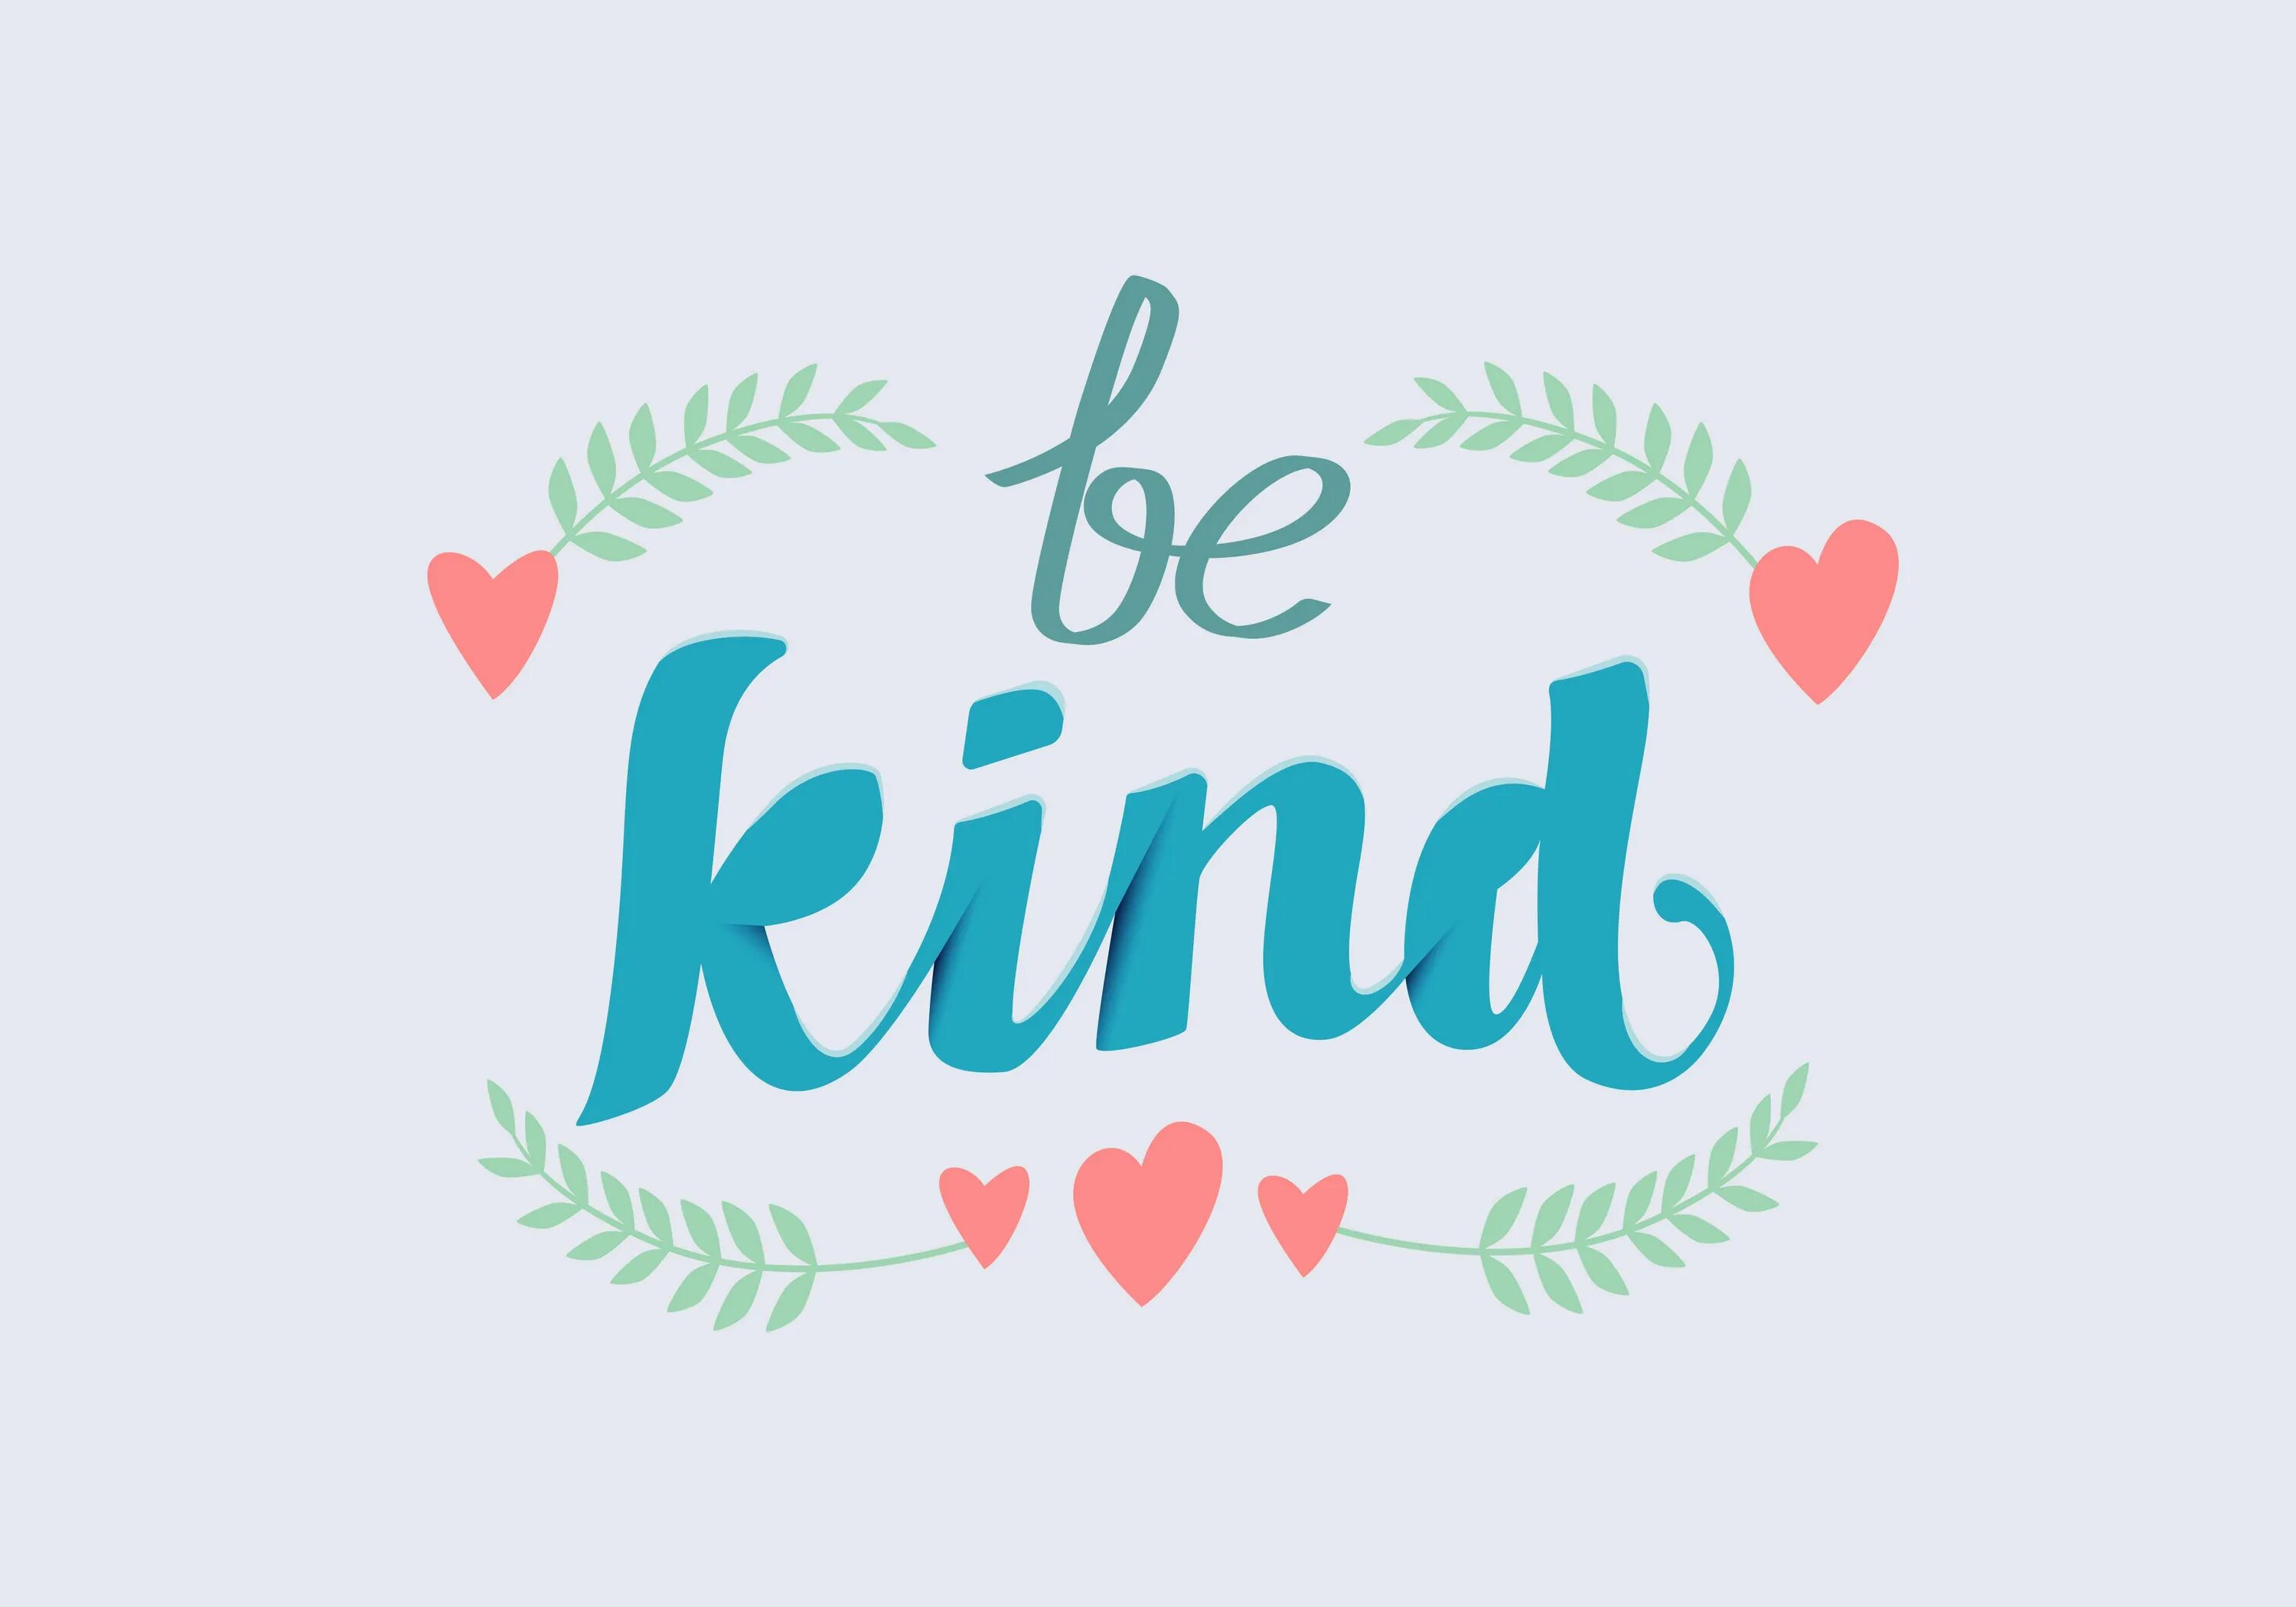 Dem kind. Bee kind. Be kind надпись. Be kind картинка. Добрый kind.